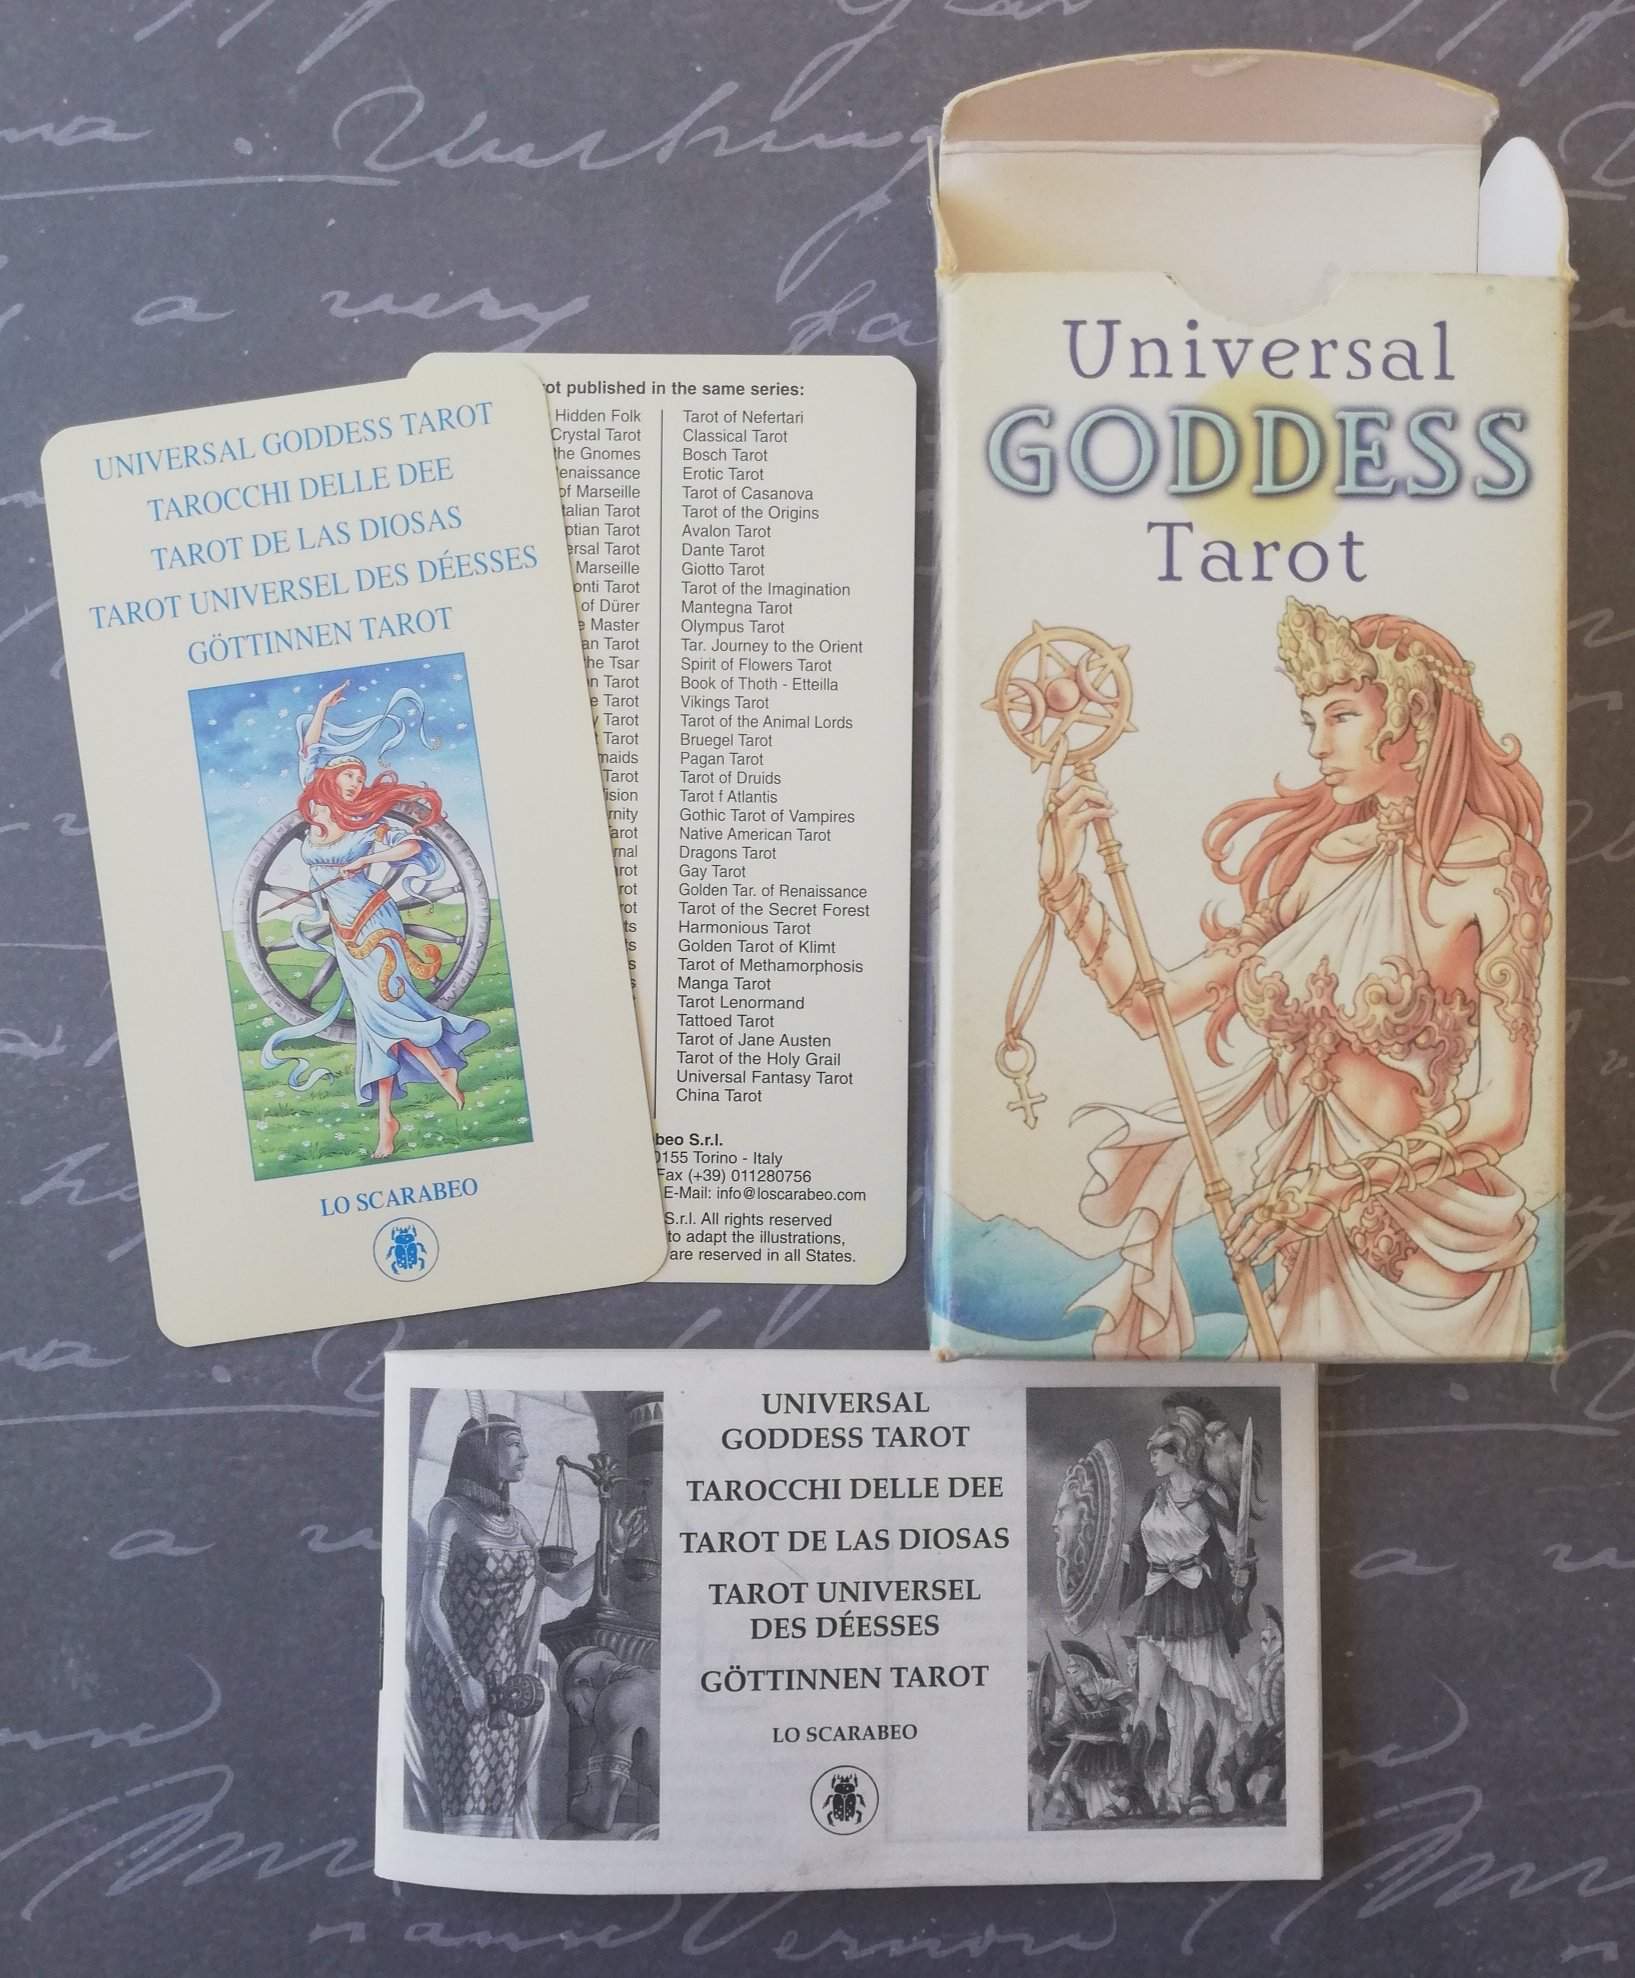 Universal Goddess Tarot Reviews - Goddess, Tarot, Universal